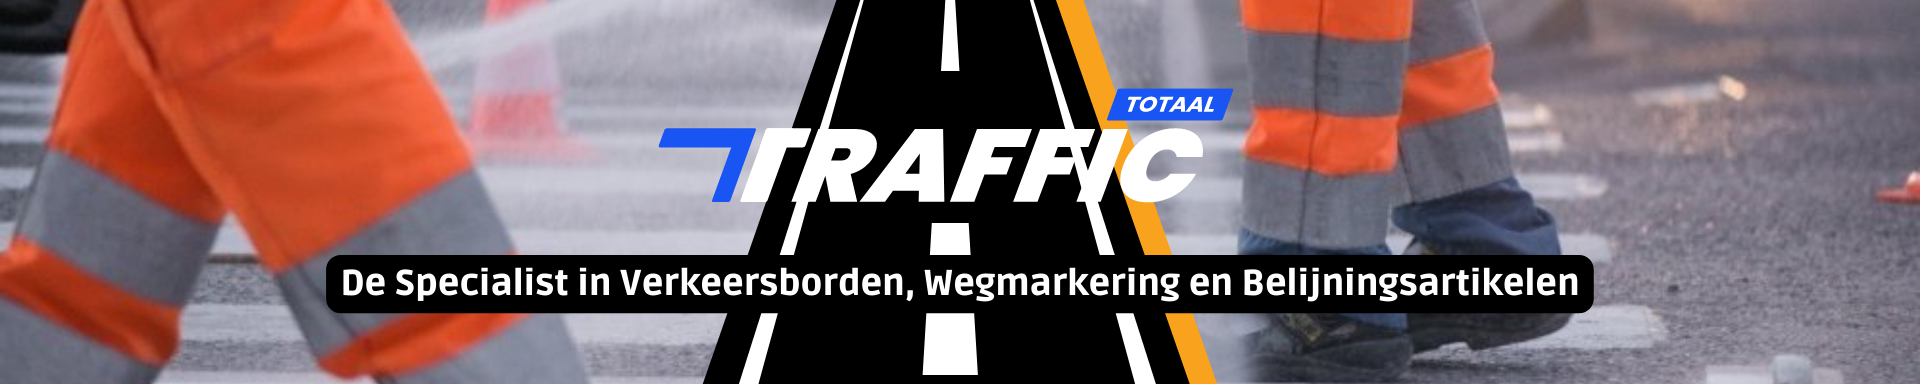 De Specialist in verkeersborden traffictotaal.nl